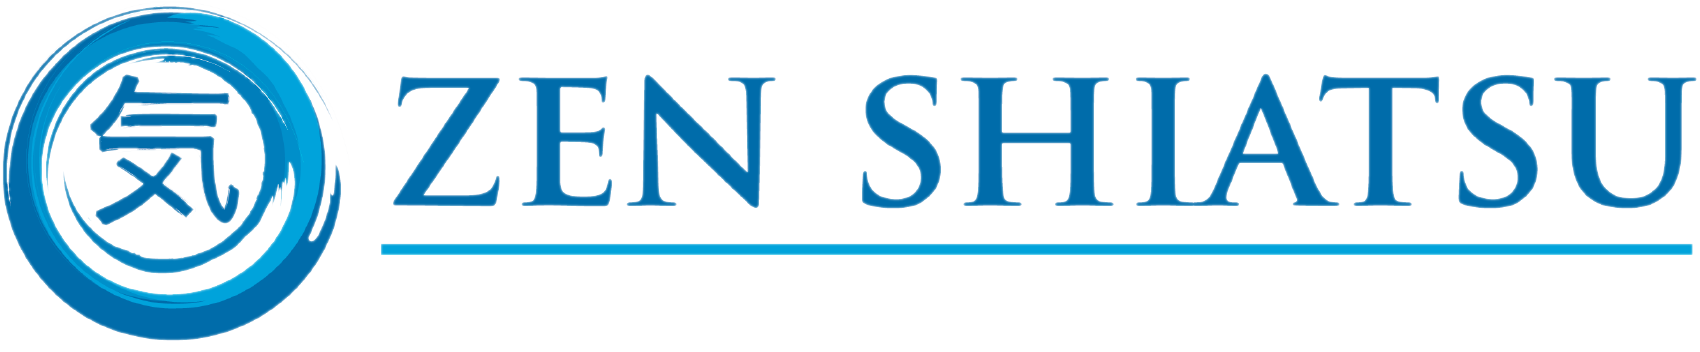 https://zenshiatsu.edu/wp-content/uploads/2021/08/logo-with-text-no-back.png